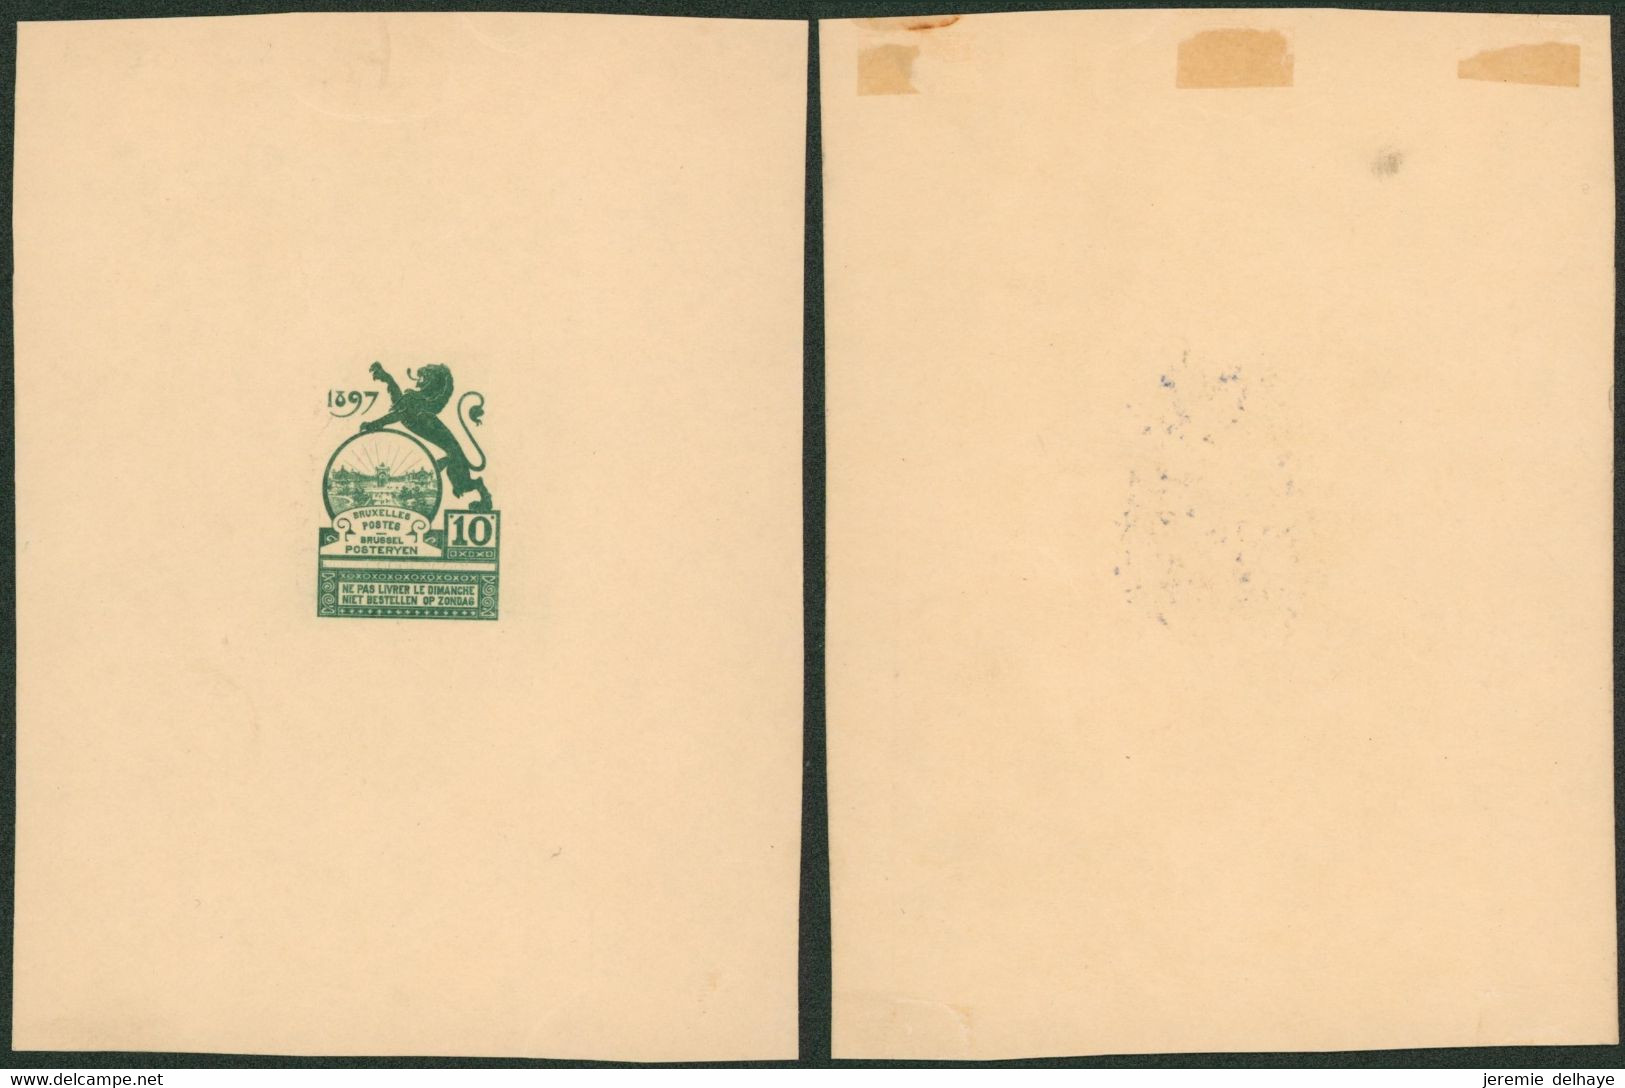 Essai - Proposition Du Peintre Louis Titz (Bruxelles Expositions 1897) Sur Papier Carton Crème (1 Couleur) : STES 2221 - Proofs & Reprints